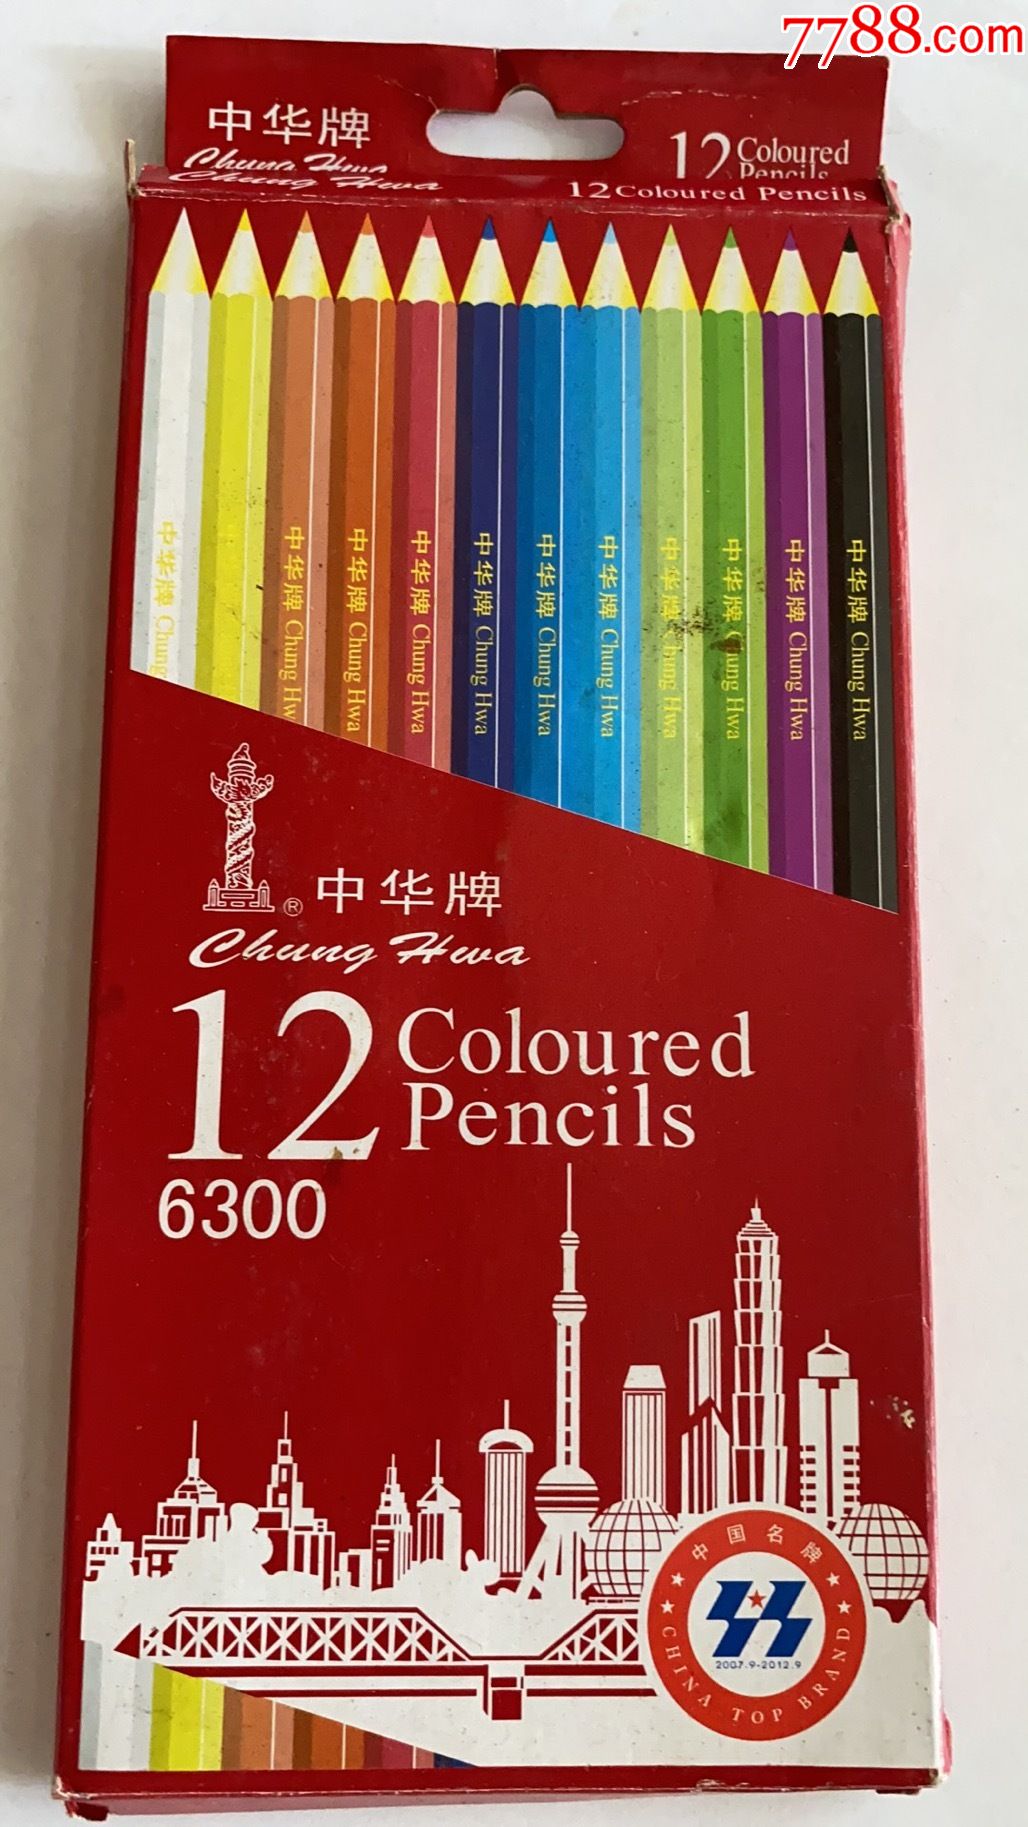 老产品中华牌12色彩色铅笔一盒